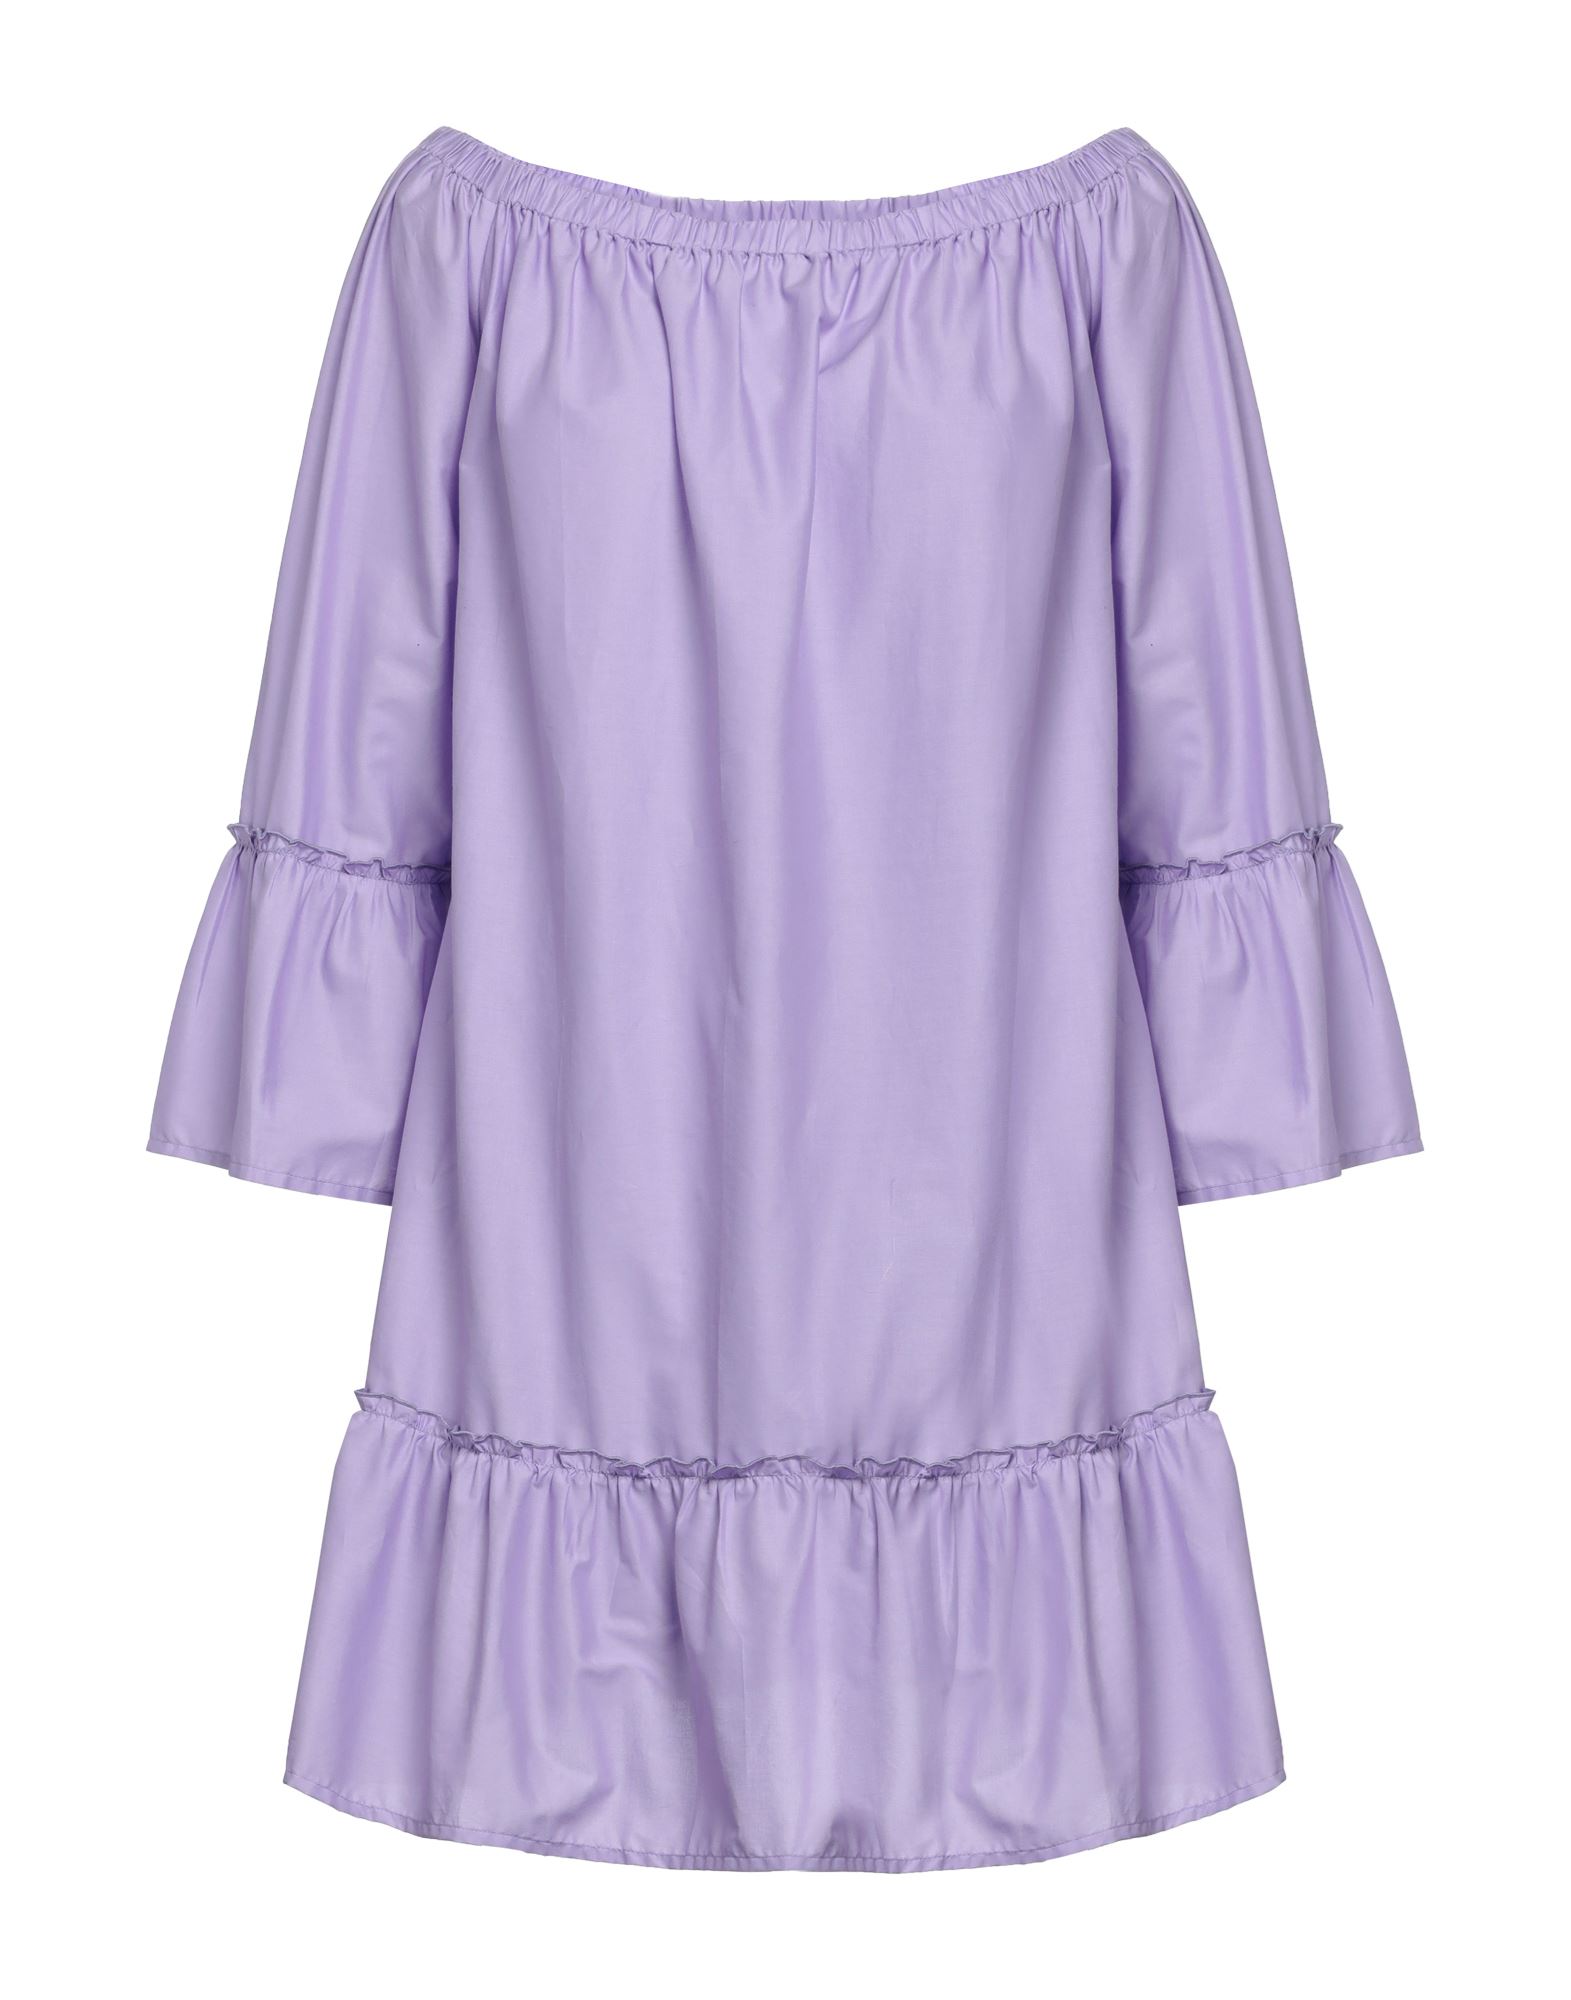 Iu Rita Mennoia Short Dresses In Purple